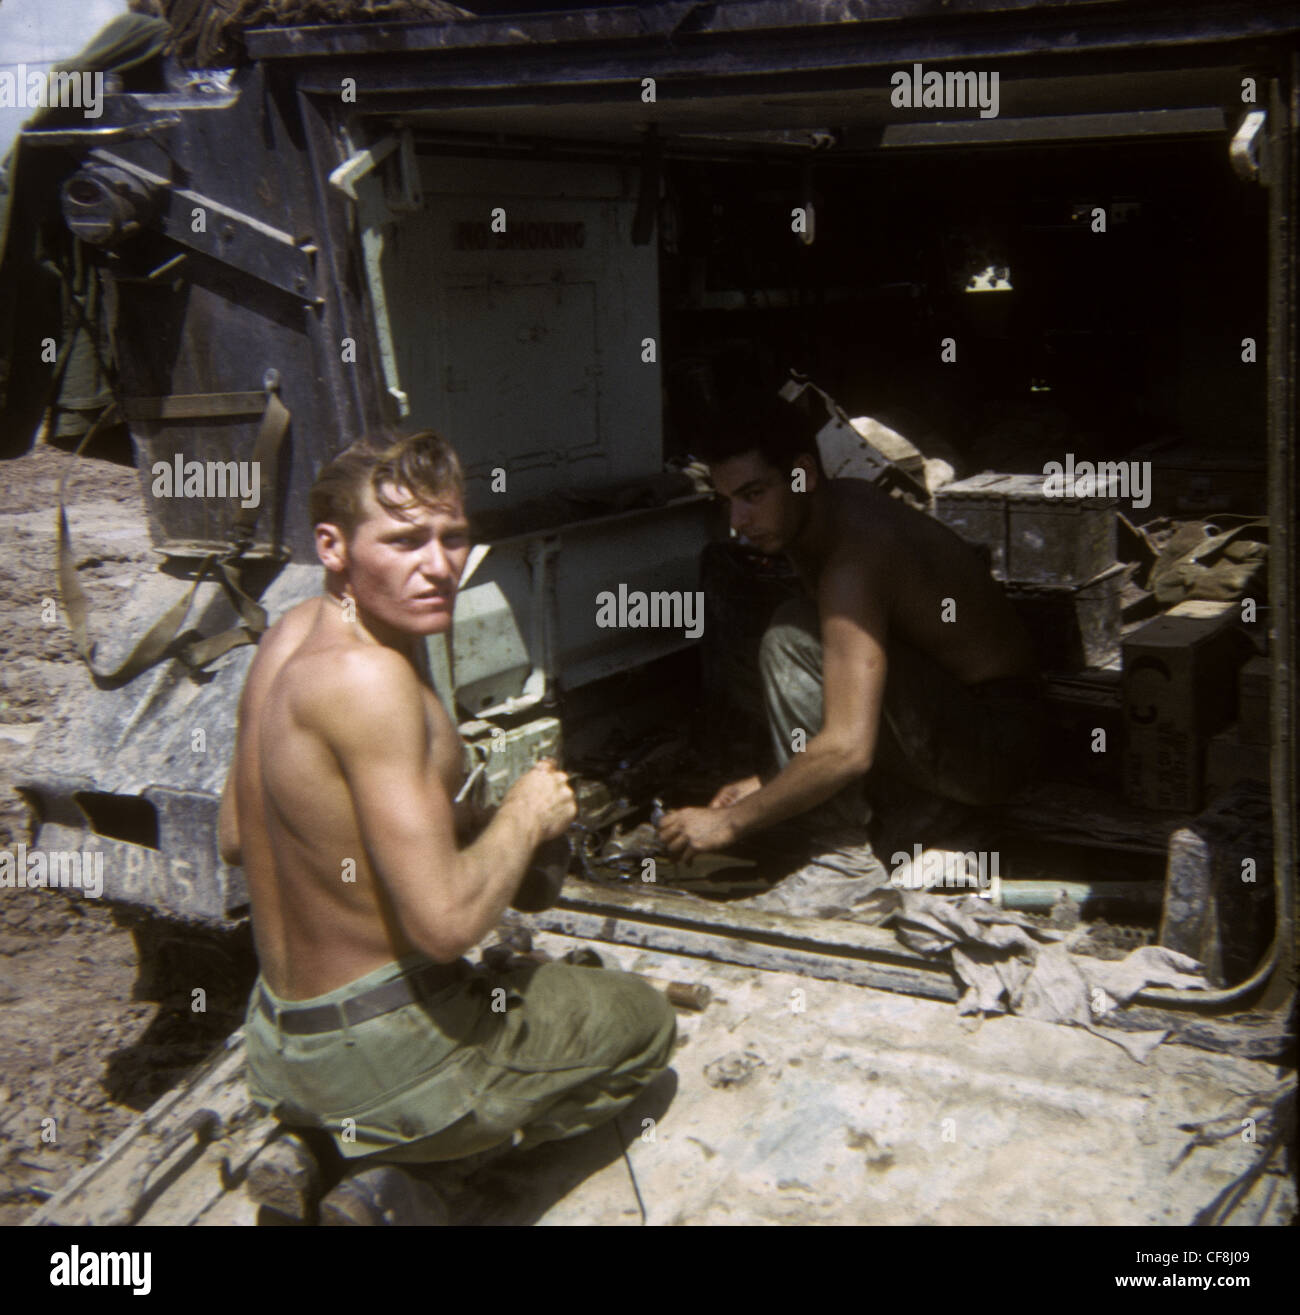 Soldati riparazione APC 1/5 (Mechanized) Fanteria CU CHI Guerra del Vietnam 1966 M113 personale blindato vettori venticinquesimo Fanteria Foto Stock